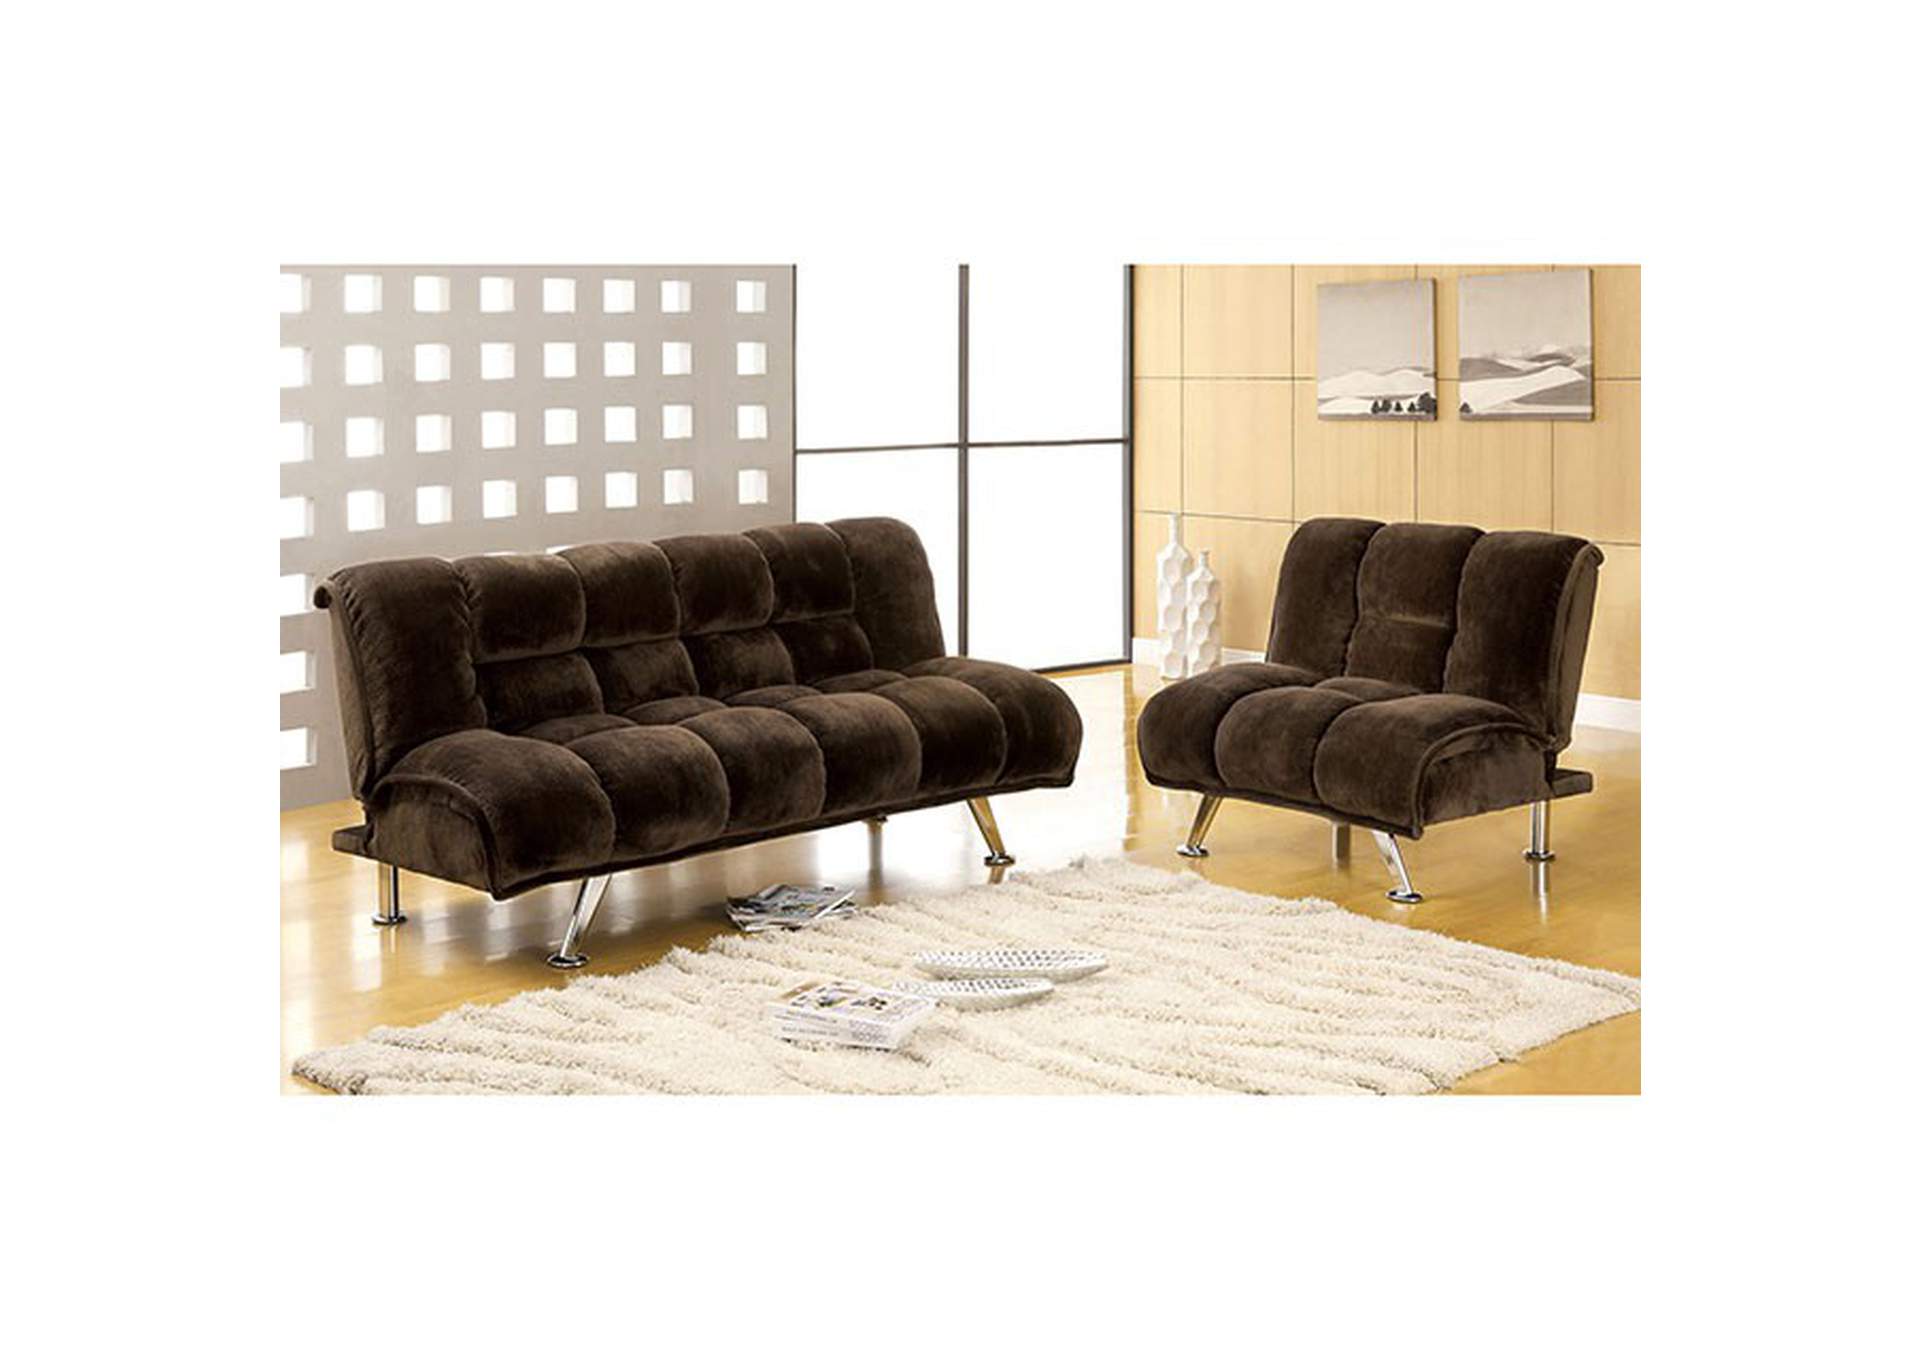 Planlagt Konsultation Æsel Marbelle Futon Sofa Dimensional Furniture Outlet